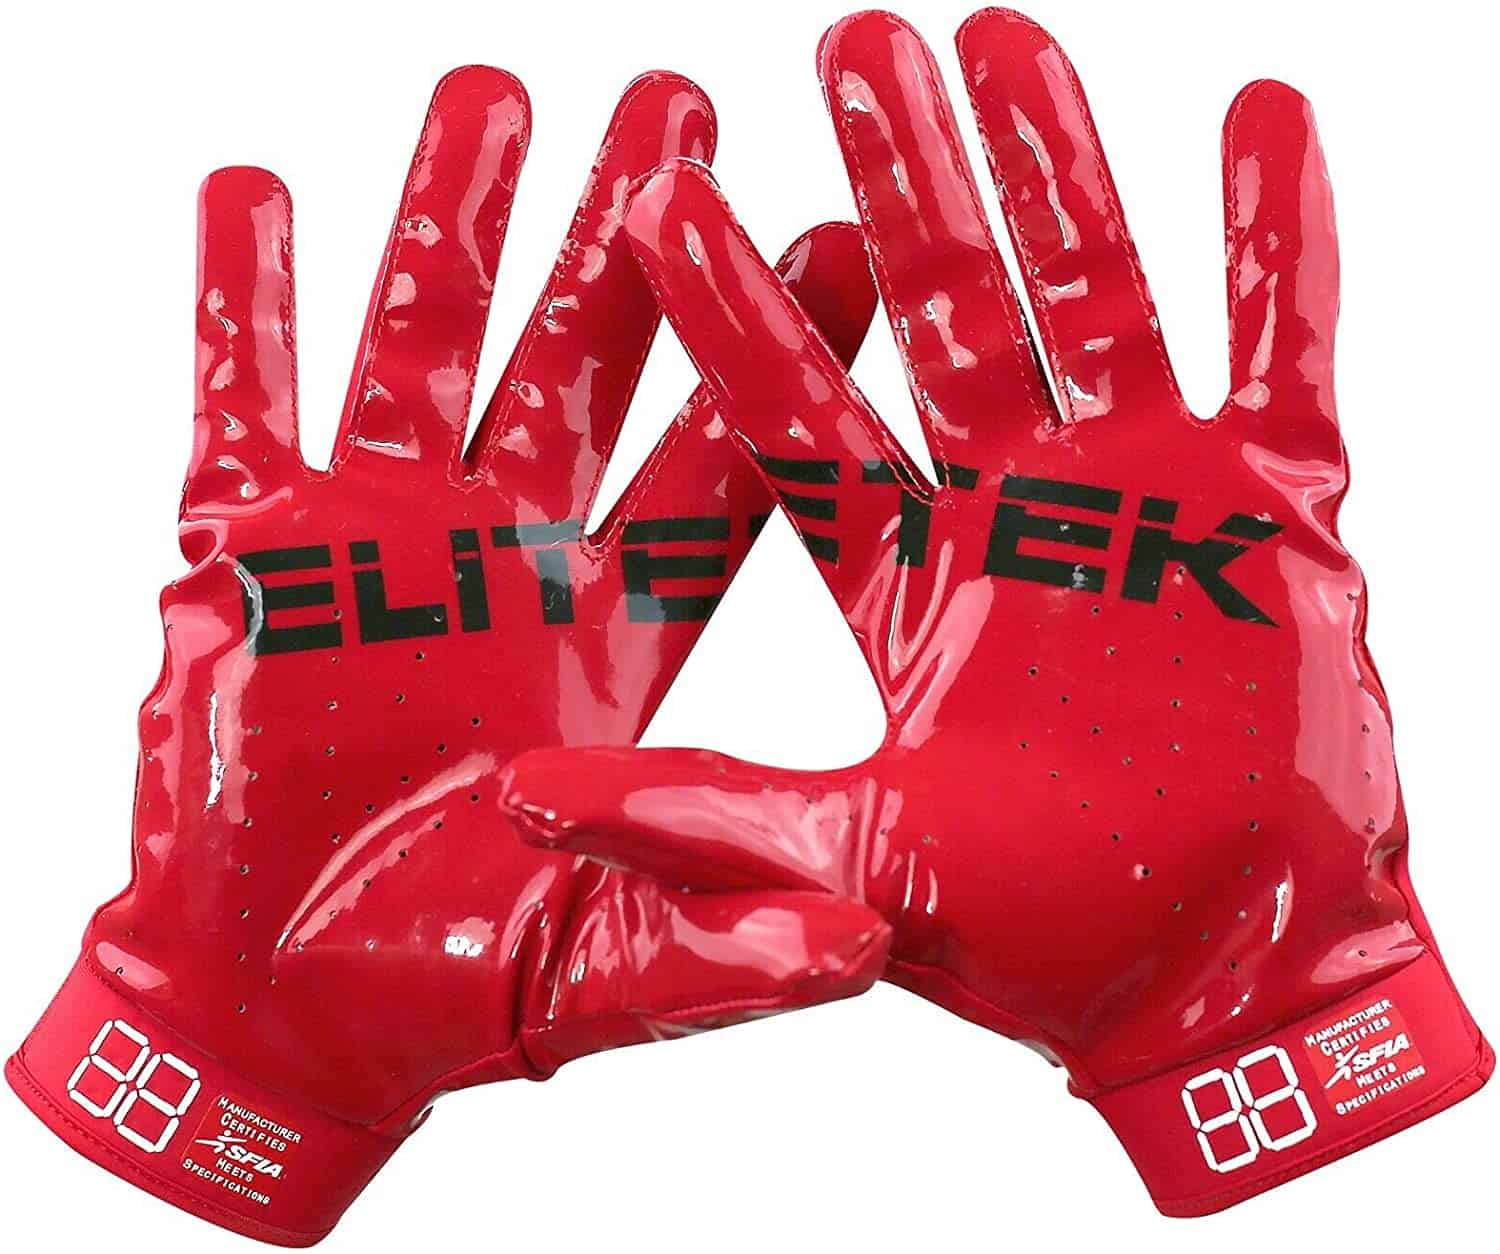 Beste personaliseerbare American Football handschoenen- EliteTek RG-14 Super Tight Fitting Football Gloves